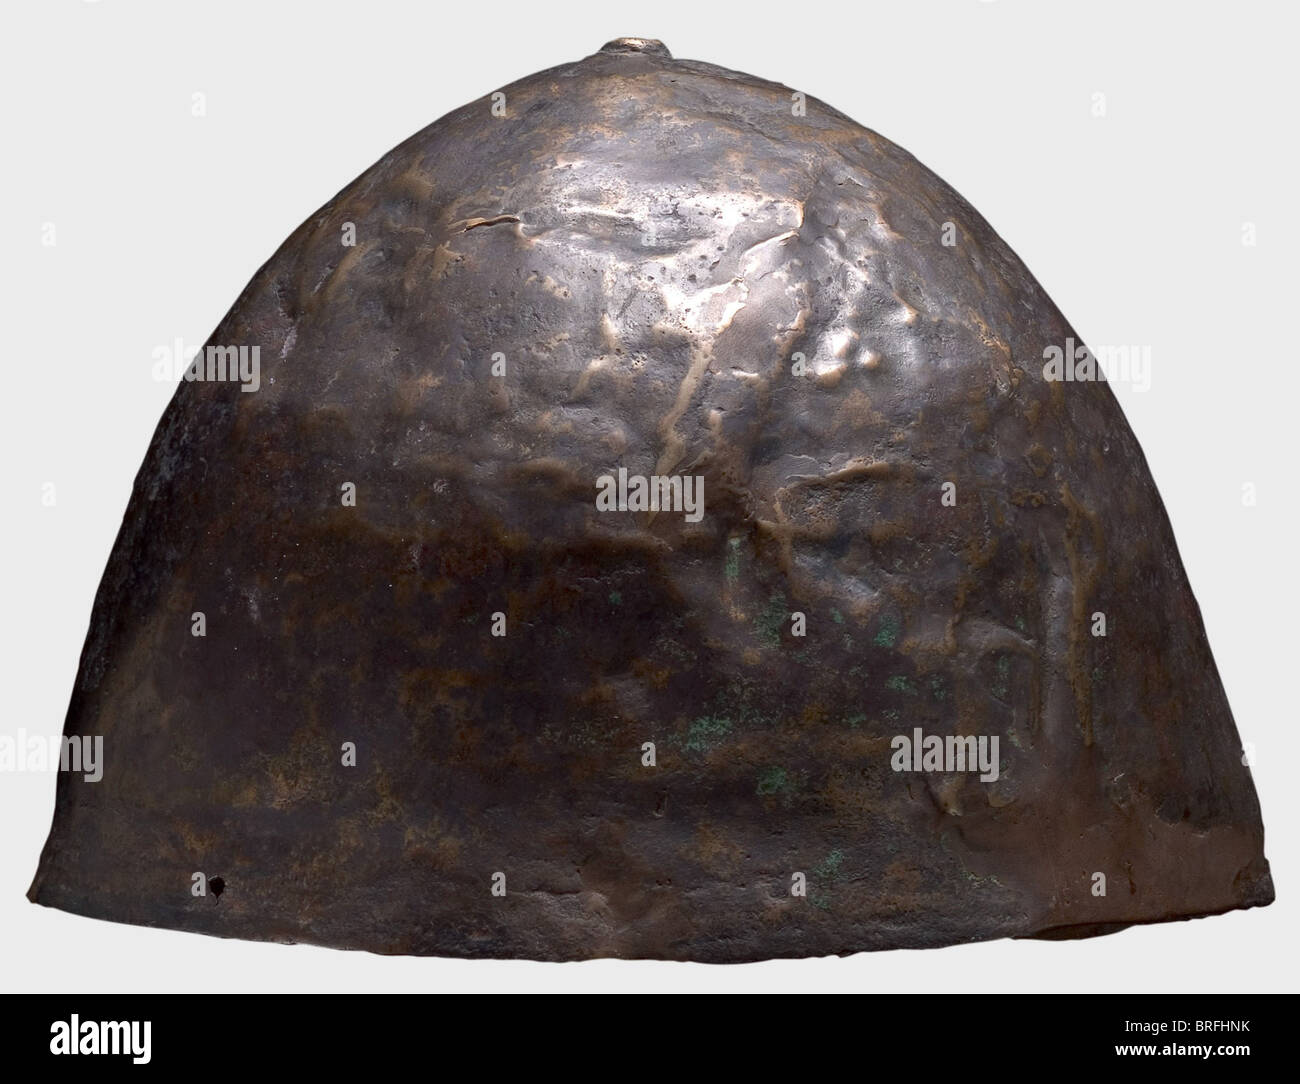 Un casque proche de l'est, 1ère moitié du 1er millénaire B.C.le crâne est en bronze avec un grand pourcentage de cuivre.il est relativement peu profond, fortement bombé, et relativement mince-côté.le haut du casque est couronné d'un bouton plat en relief.UN petit trou au bord du casque vraisemblablement servi pour fixer le Mentonnière.hauteur 15.7 cm.poids 583 g.le métal est bien conservé, légèrement déformé, et a une patine noire brunâtre.après sa récupération, il a été ramené à sa forme originale et a donné une patine légère.Petites restaurations dans le crâne, droits additionnels-Clearences-non disponible Banque D'Images